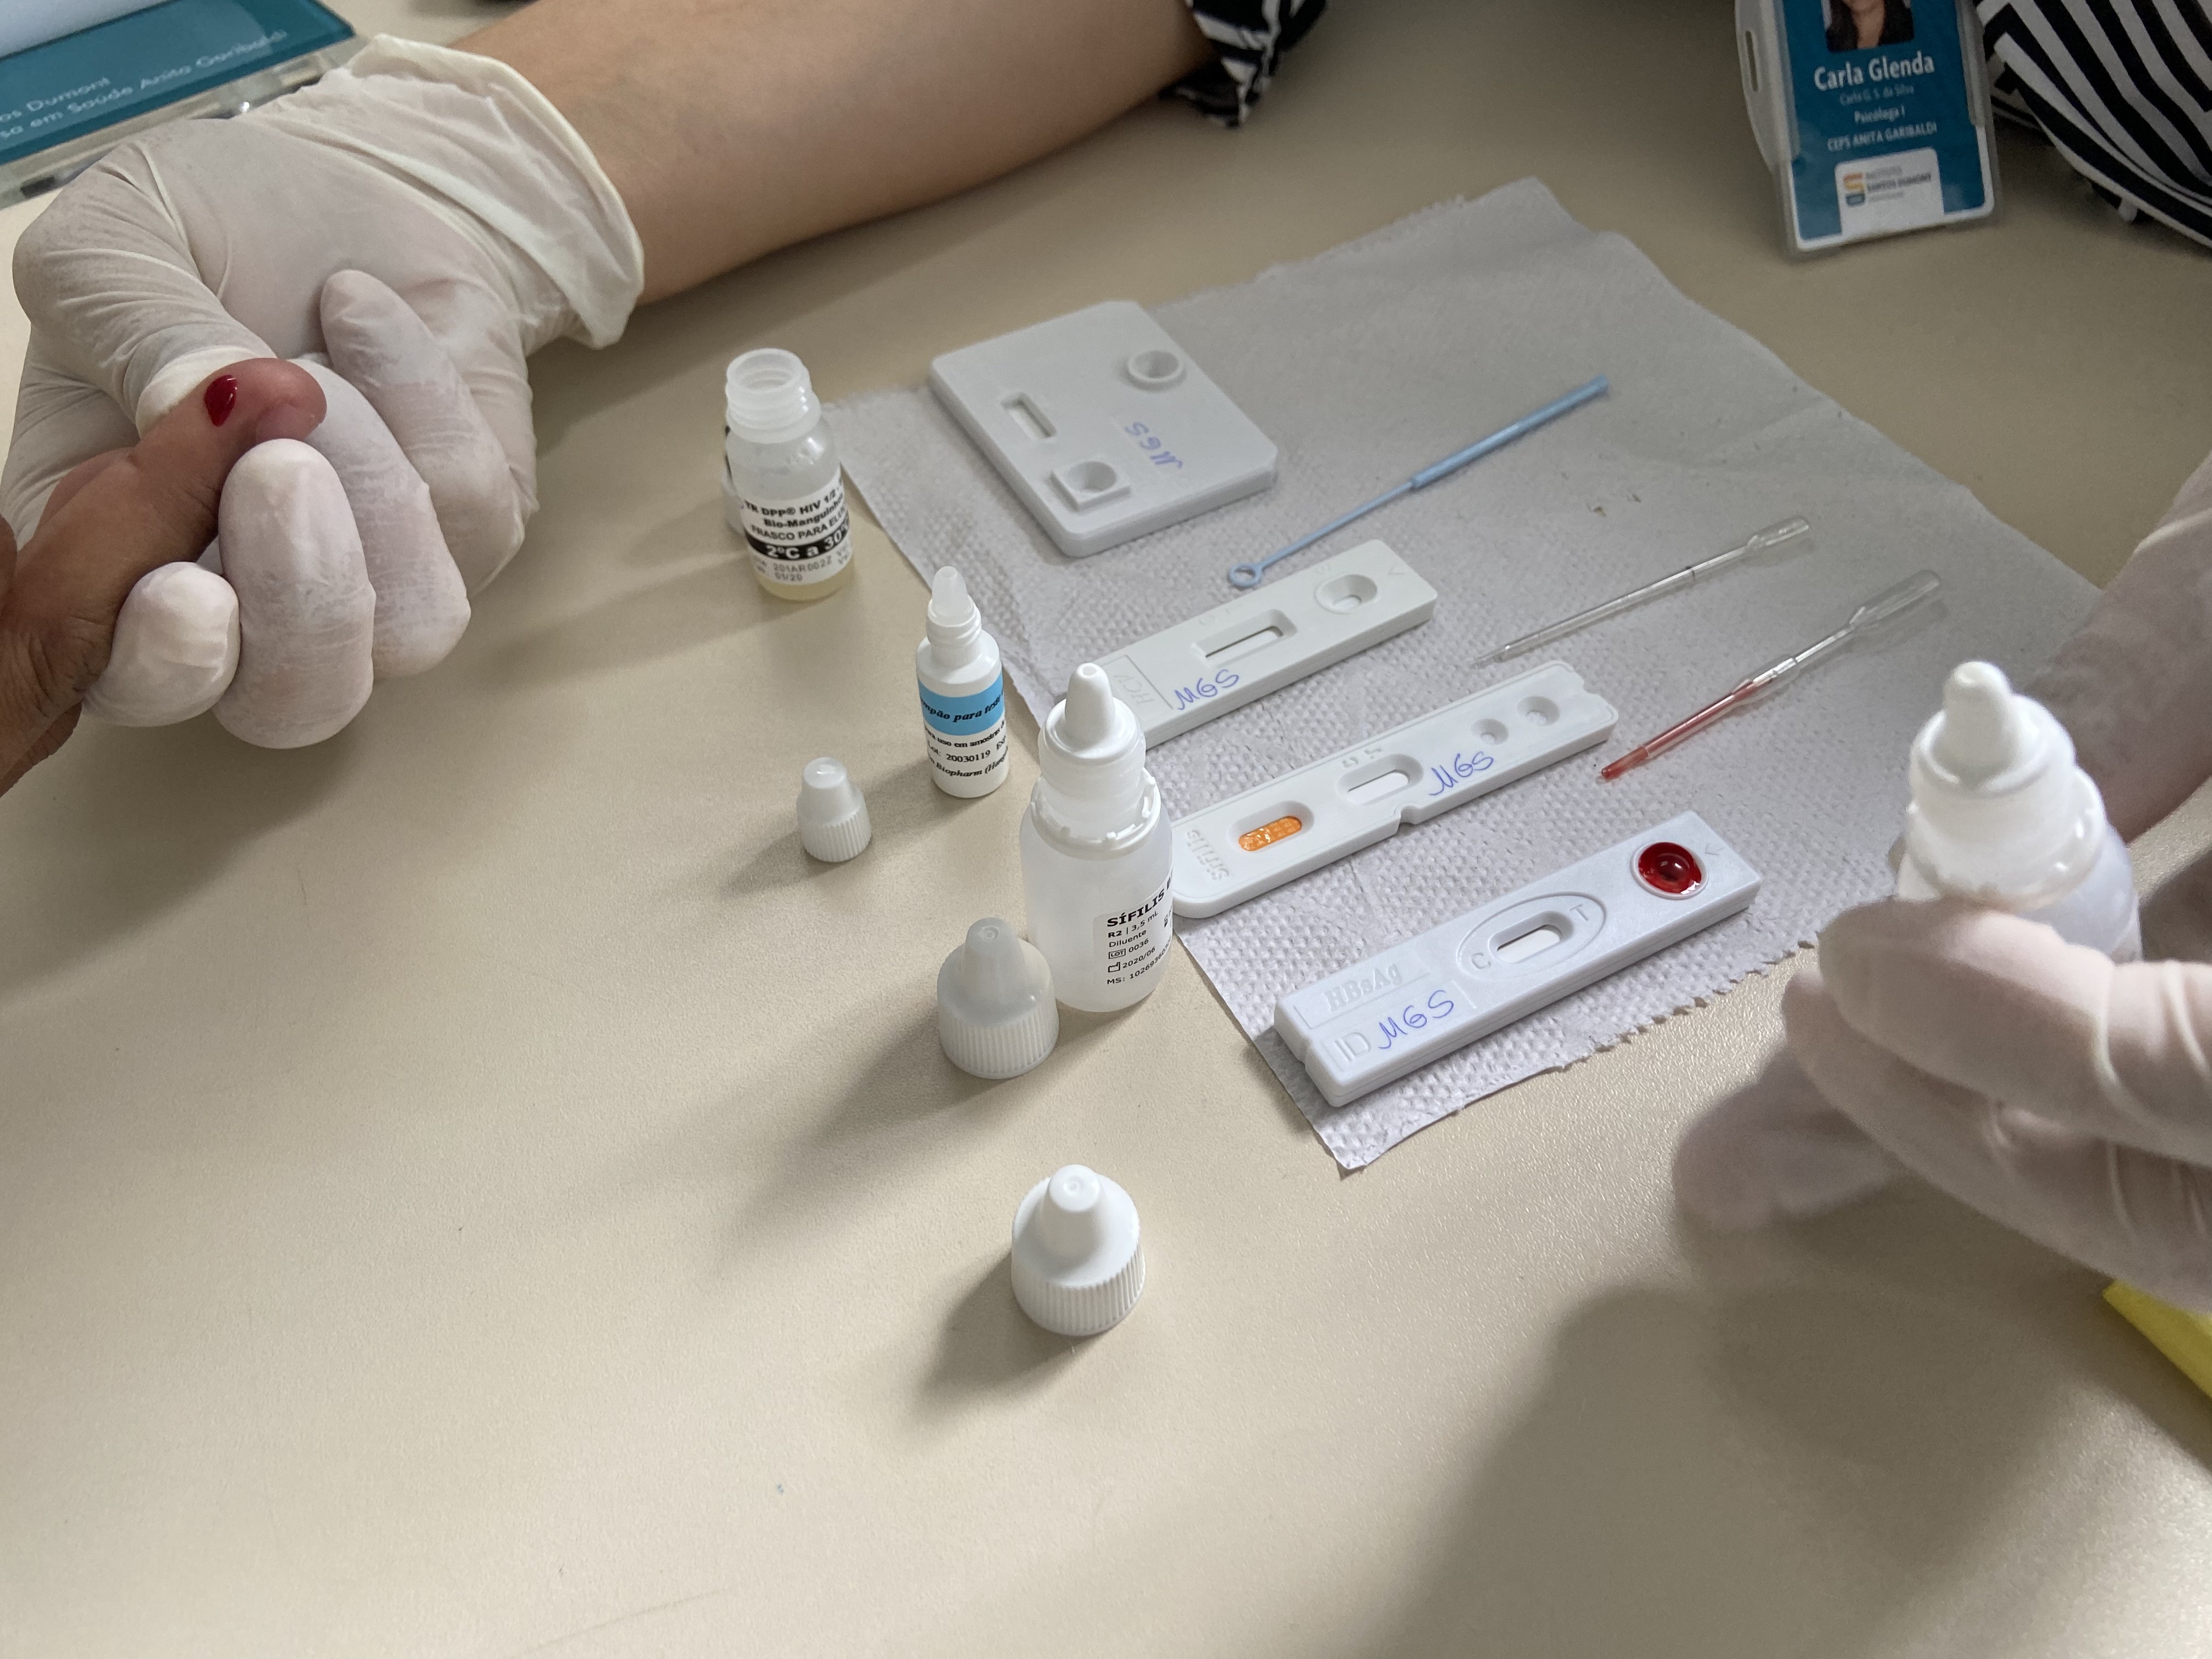 Testes rápidos de HIV, sífilis e hepatite passam a ser oferecidos nas UBSs de Juiz de Fora